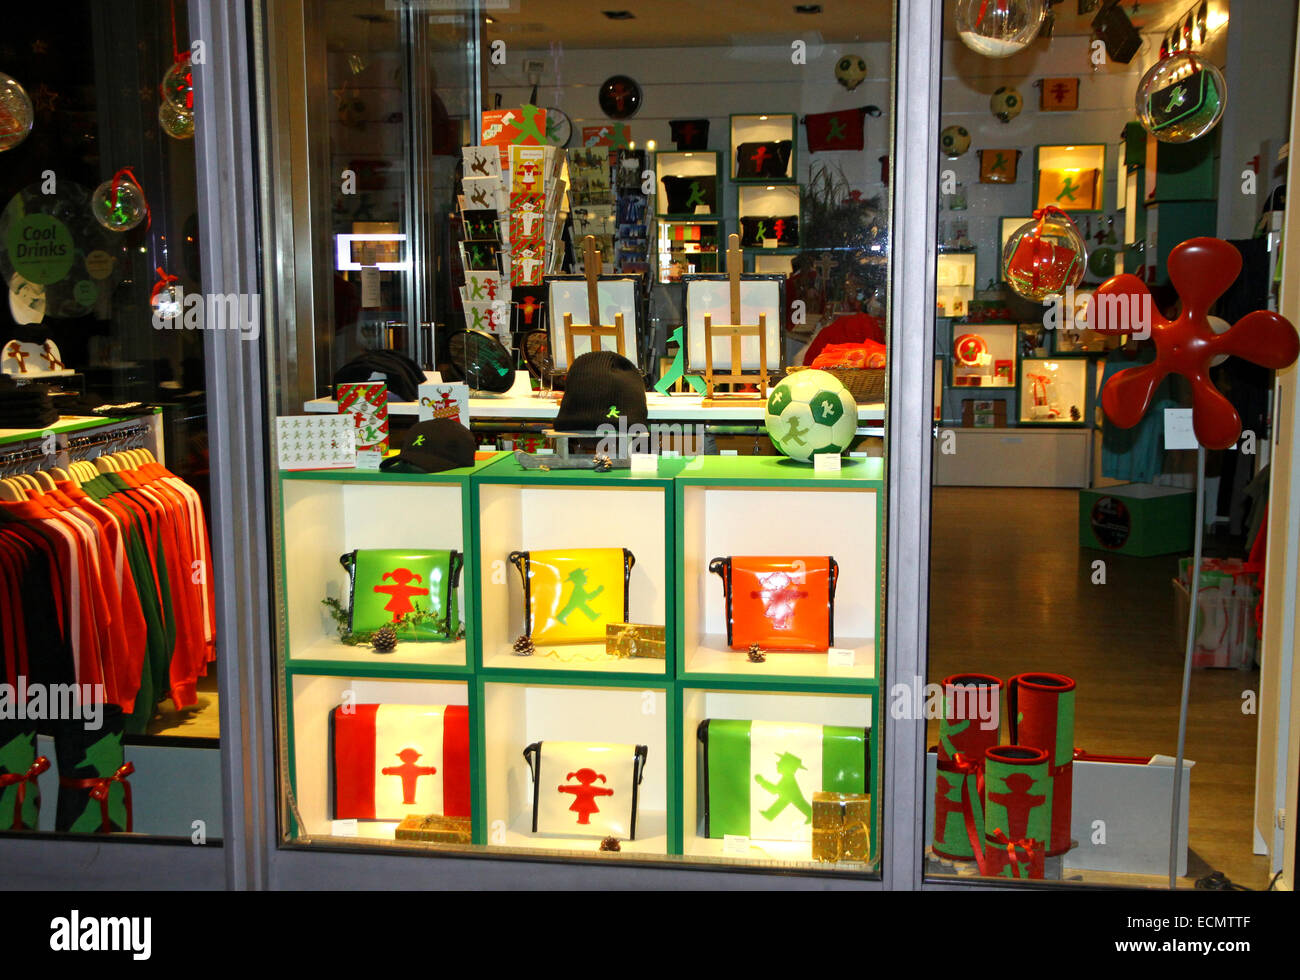 Schaufenster der Ampelmann (symbolische Person auf Ampel angezeigt) Store in Berlin, Deutschland Stockfoto